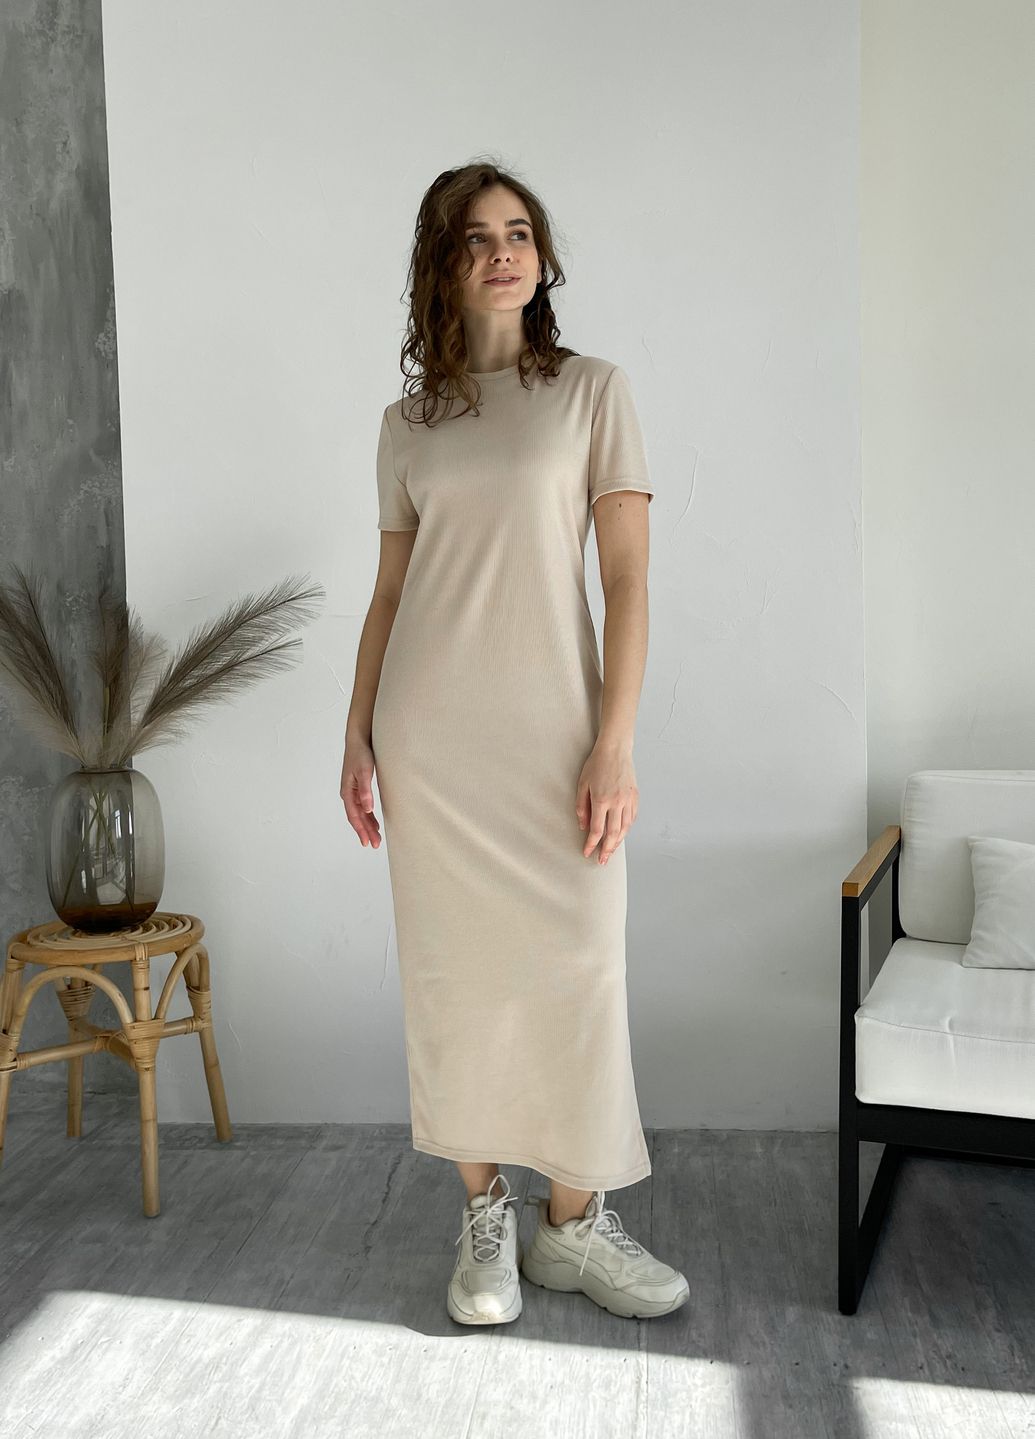 Купить Длинное платье-футболка в рубчик светло-бежевое Merlini Кассо 700000122 размер 42-44 (S-M) в интернет-магазине